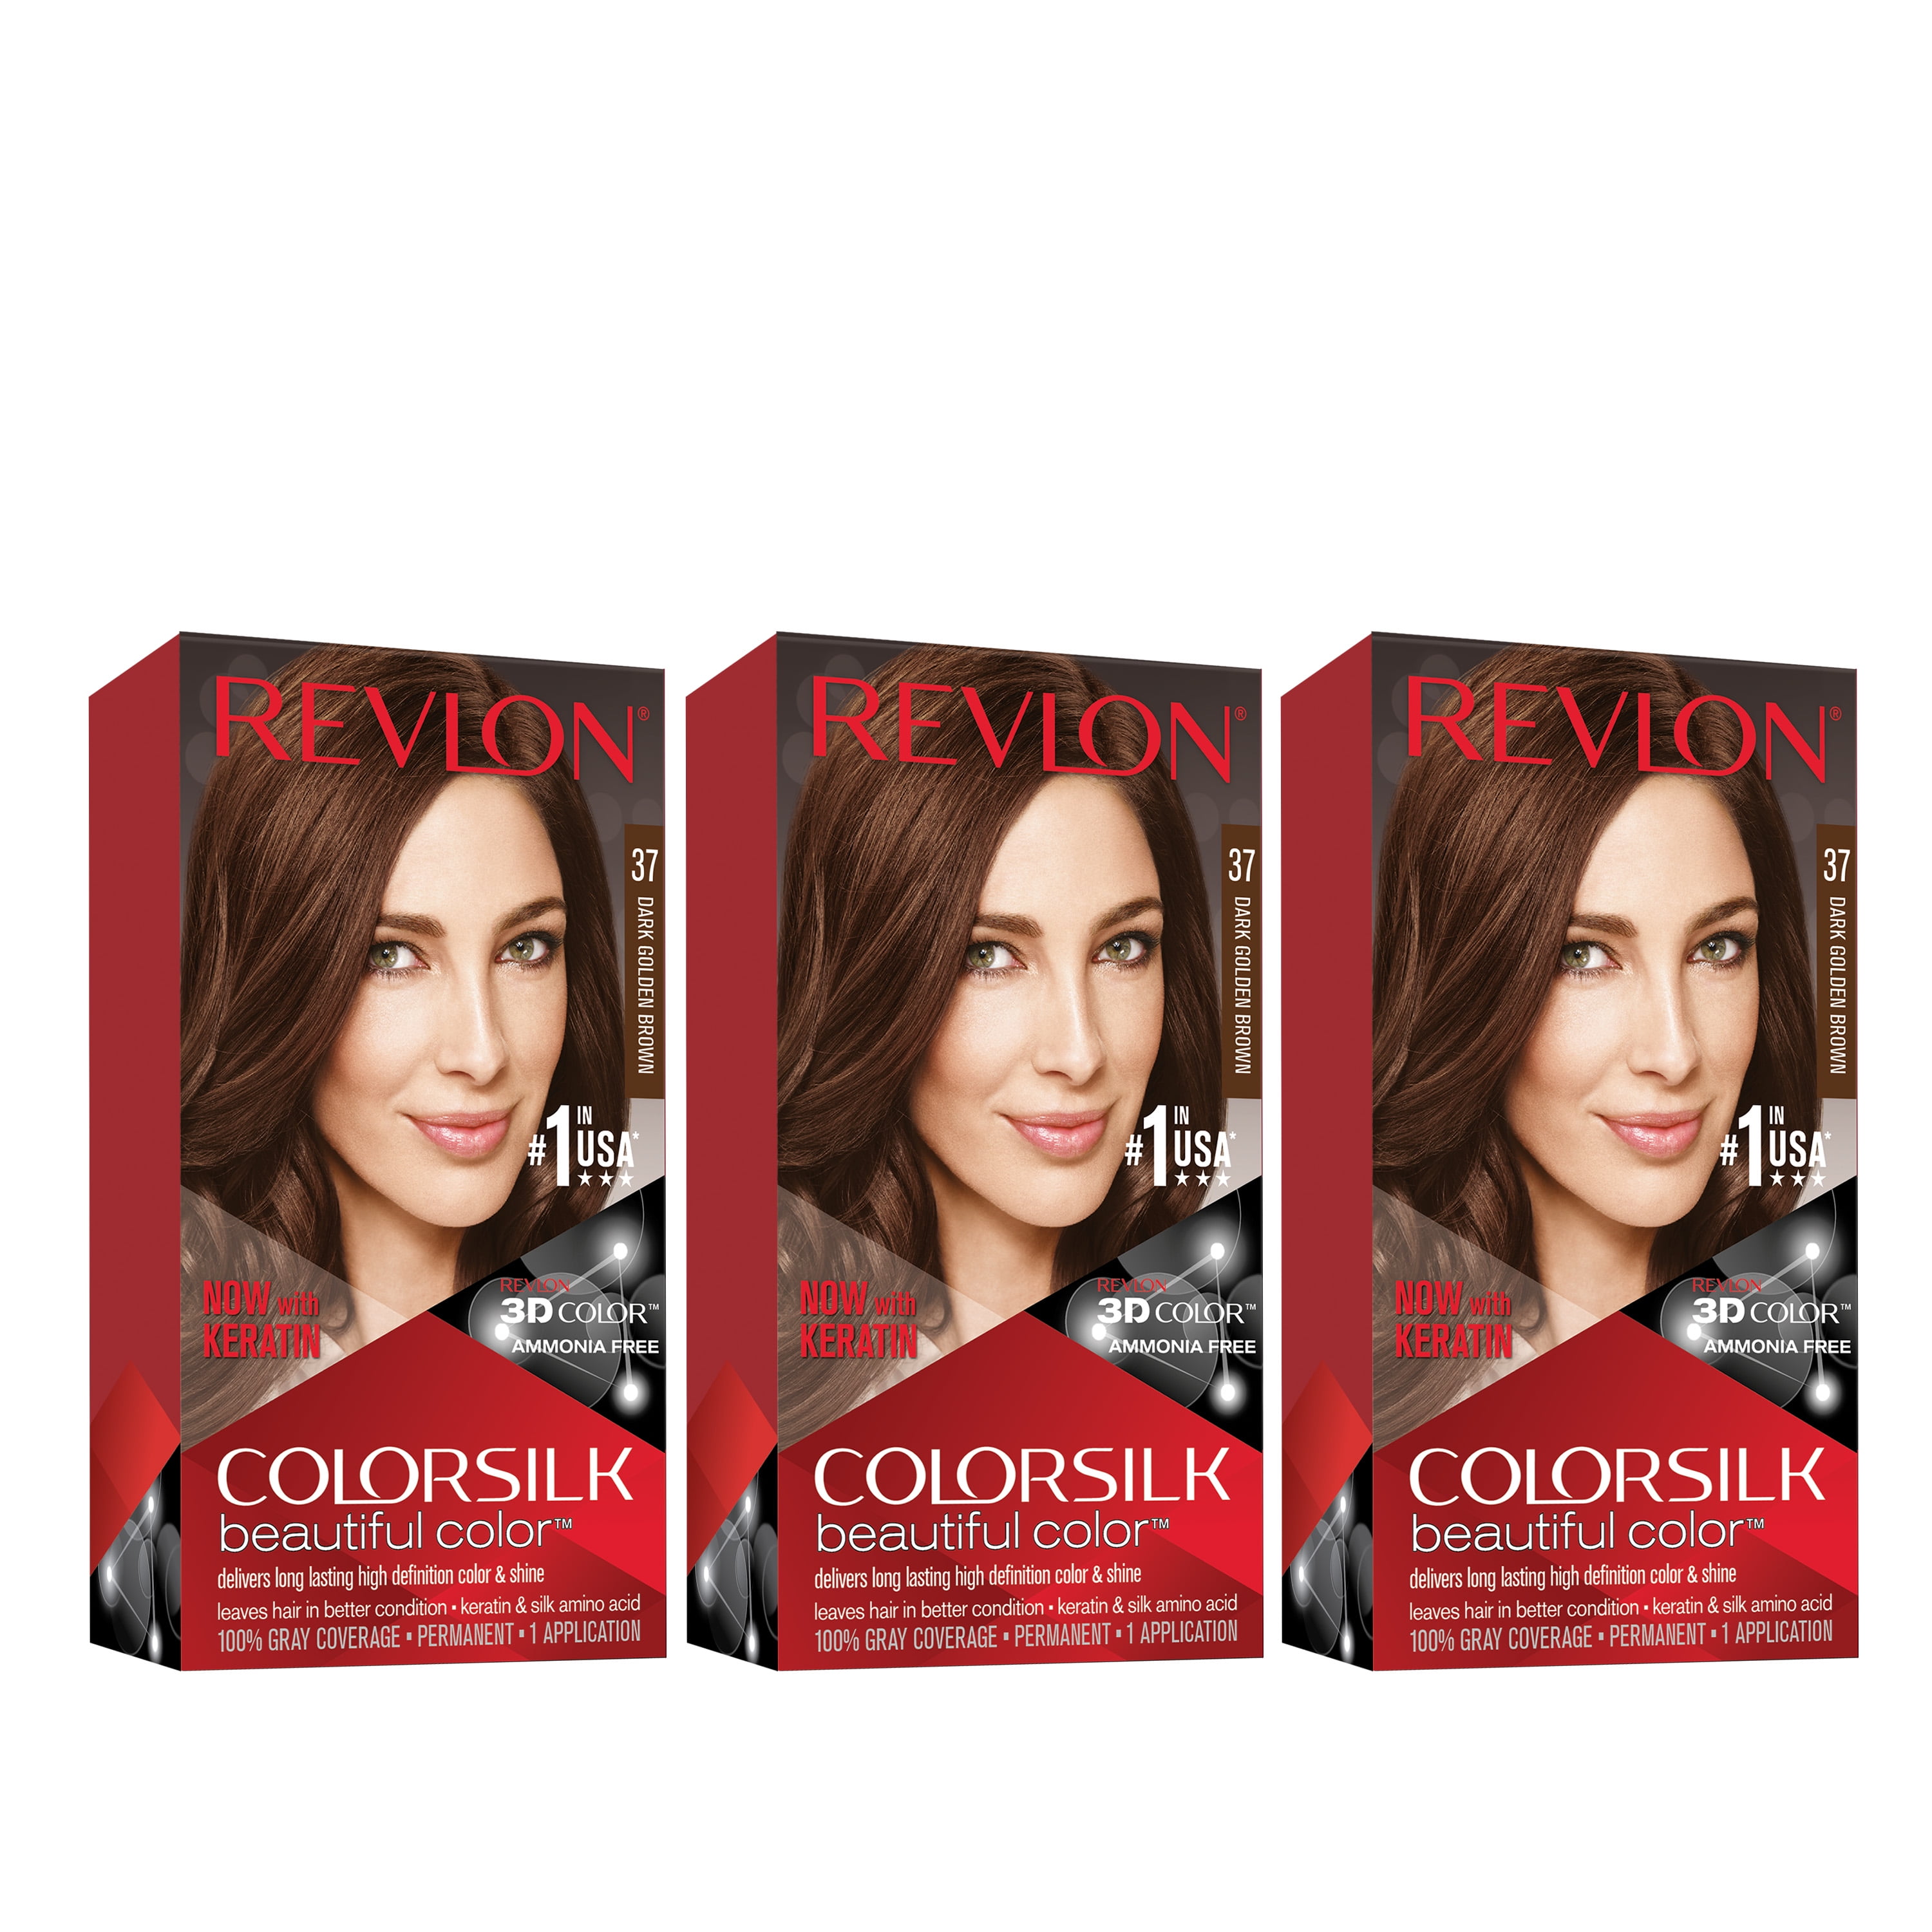 Revlon ColorSilk Beautiful Permanent Hair Dye, Dark Brown, At Home Full  Coverage Application Kit, 30 Dark Brown, 3 Pack 